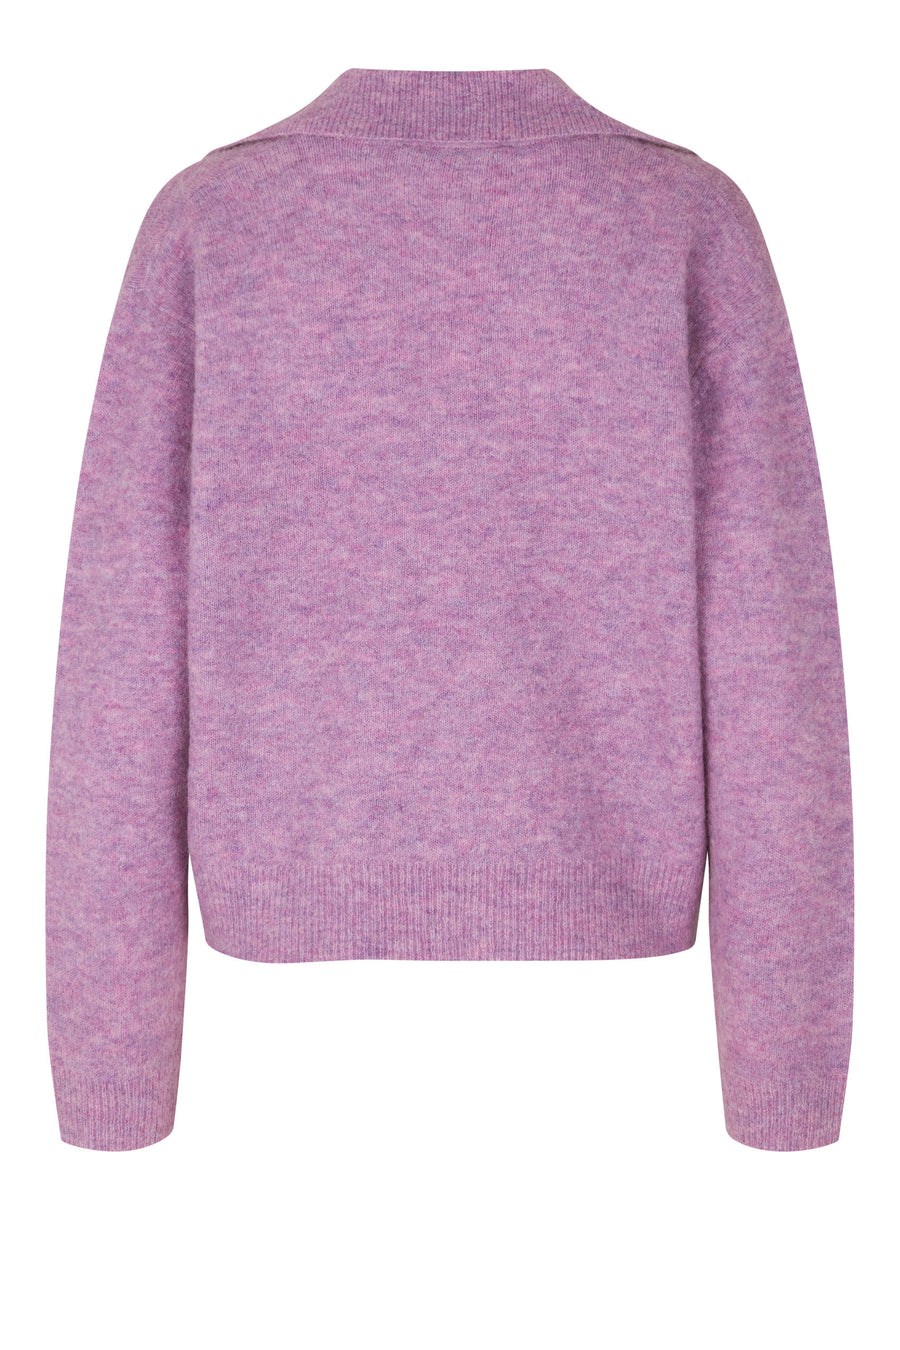 OSFab polo knit - paisley purple